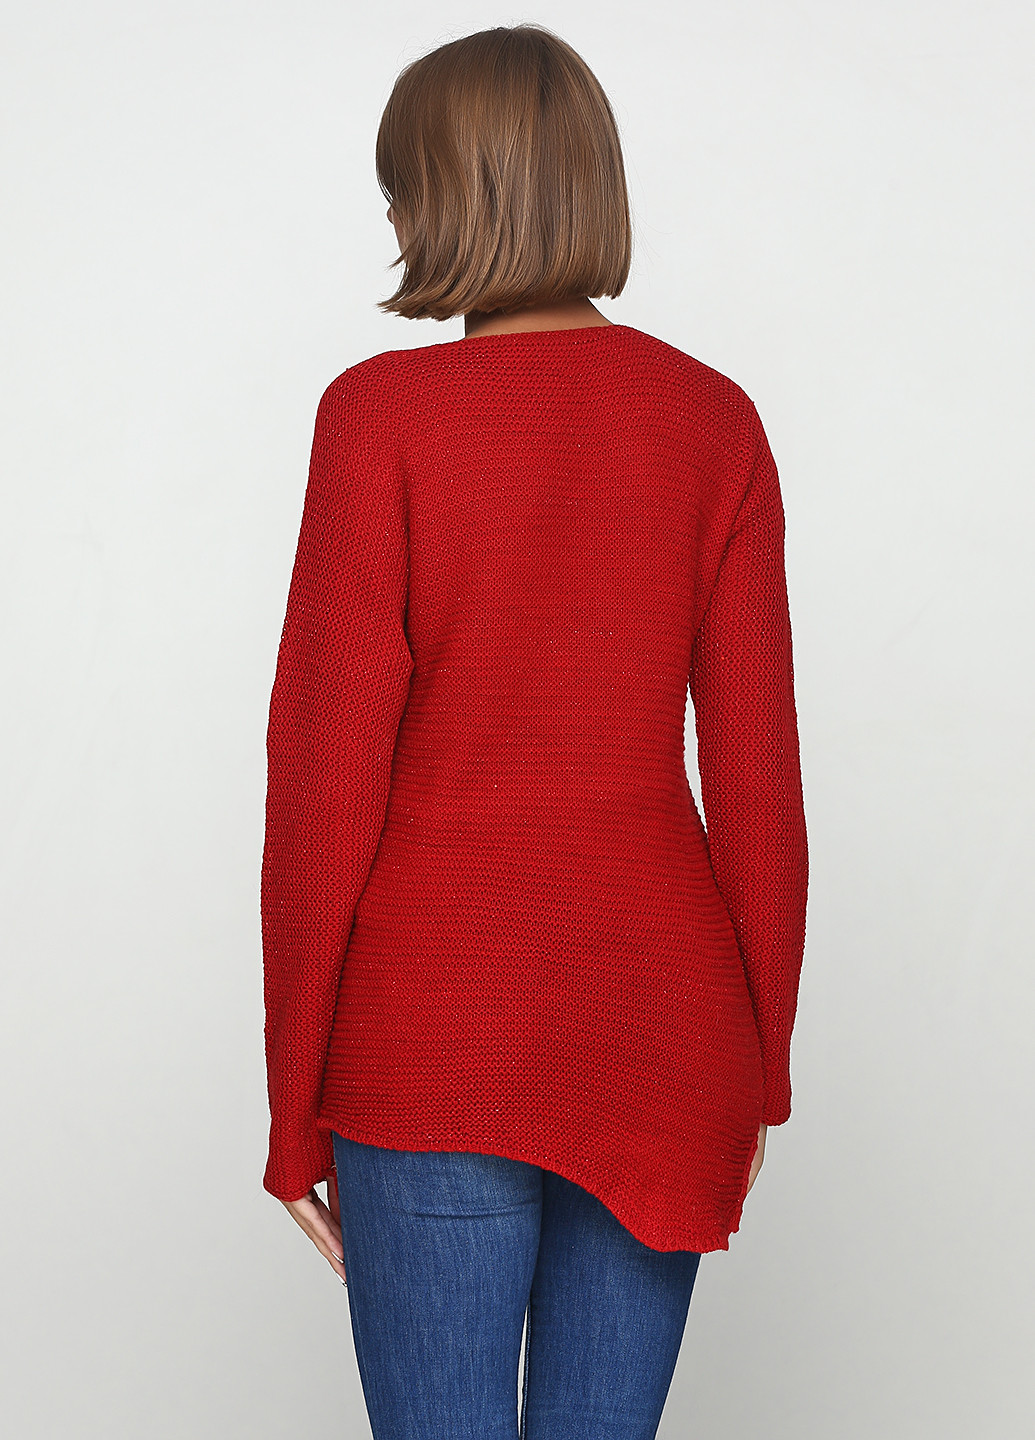 Красный демисезонный пуловер пуловер Eser